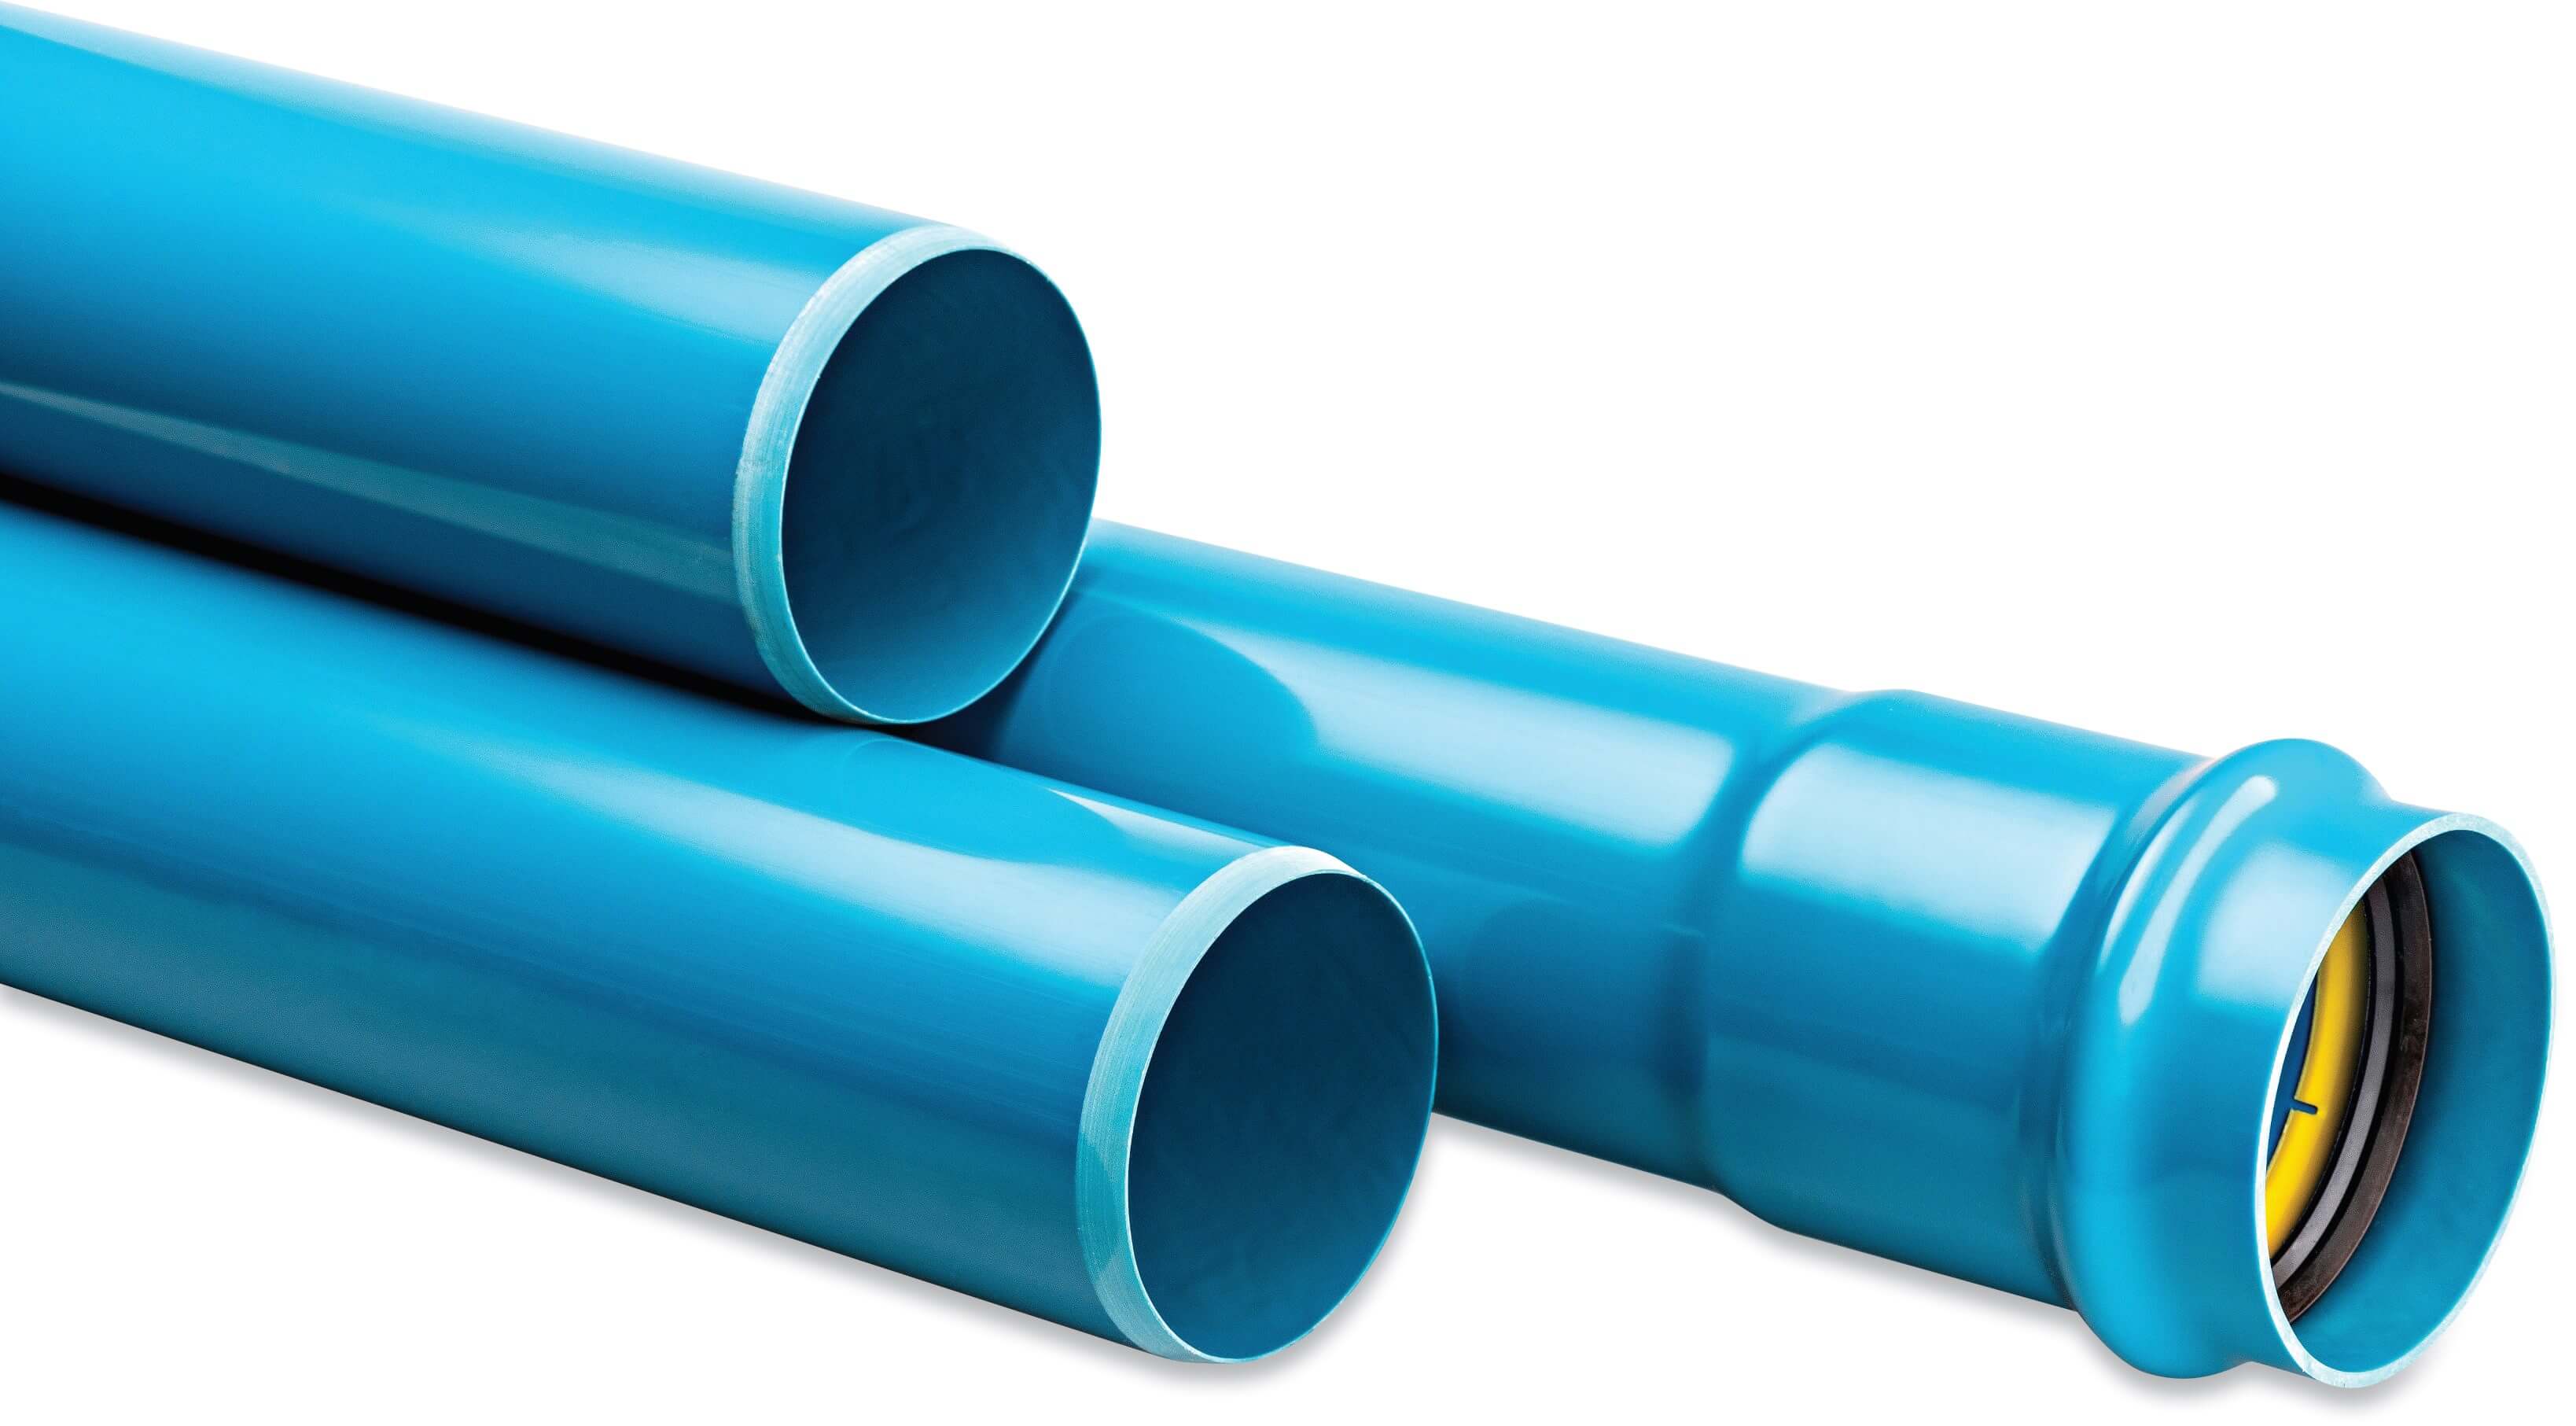 Drukbuis PVC-A 90 mm x 2.6 mm manchet x glad ISO-PN10 blauw 6m KIWA